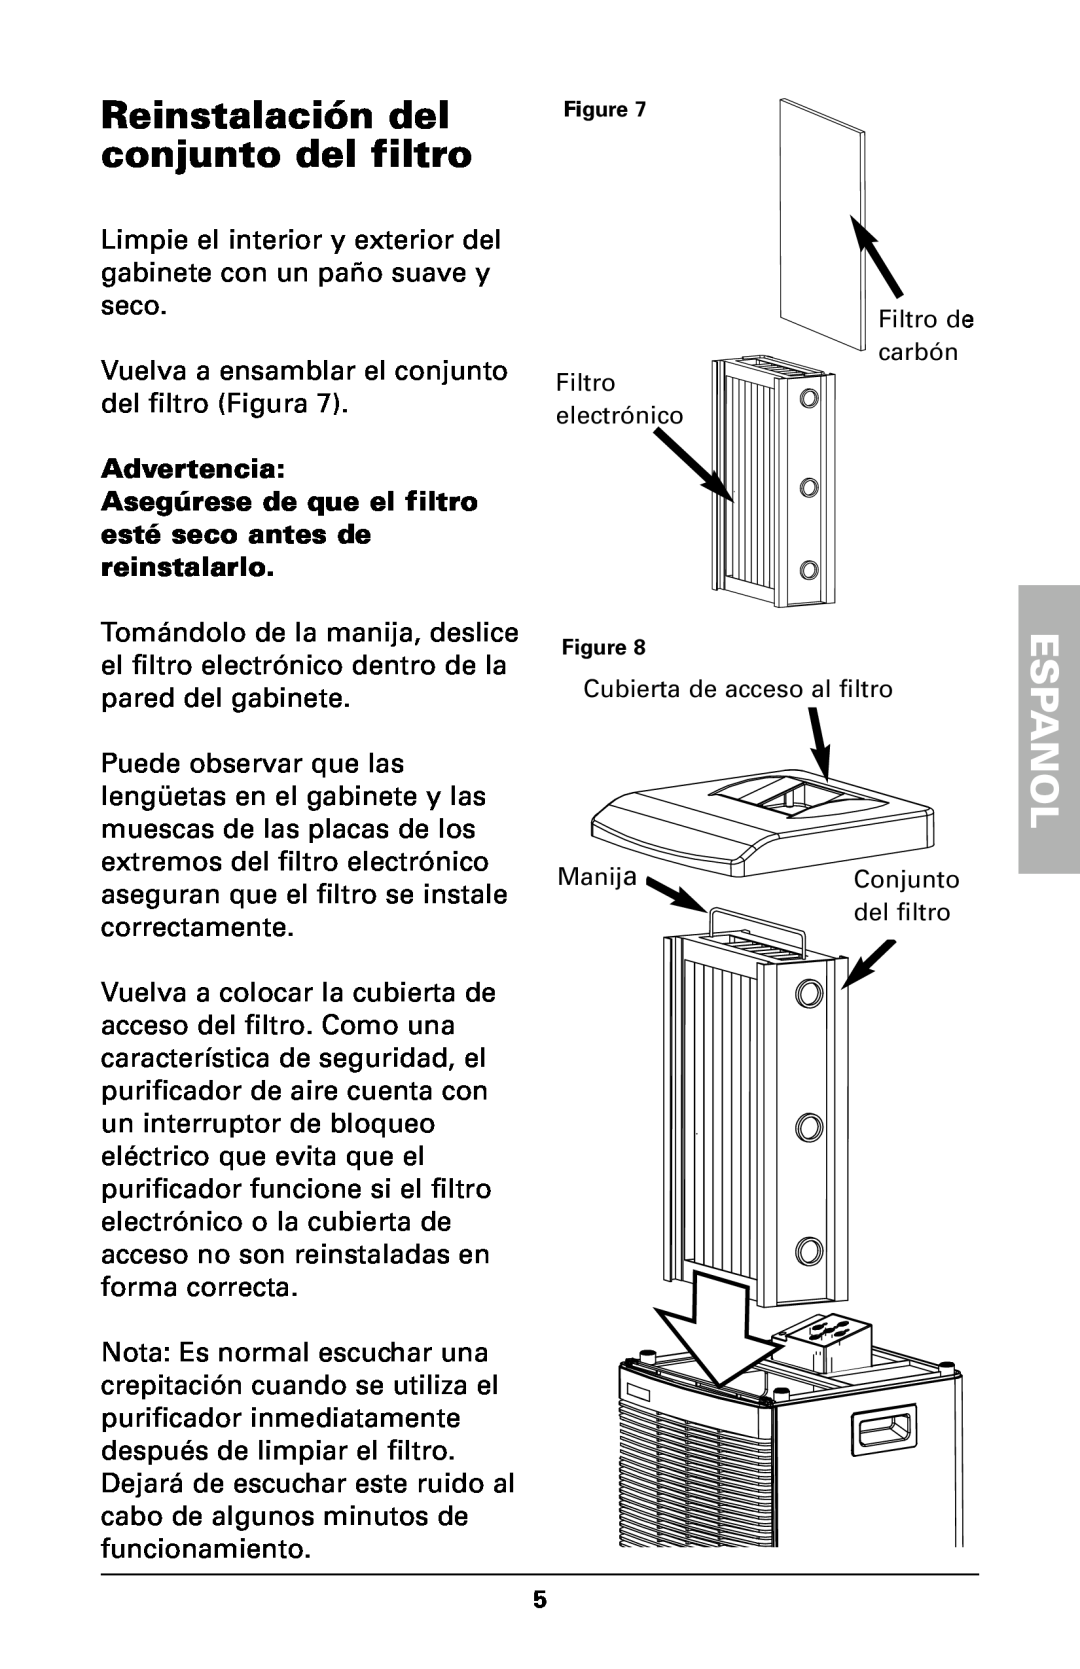 Trion High Efficiency Console Electronic Air Purifier manual Reinstalación del conjunto del filtro, Espanol, Advertencia 